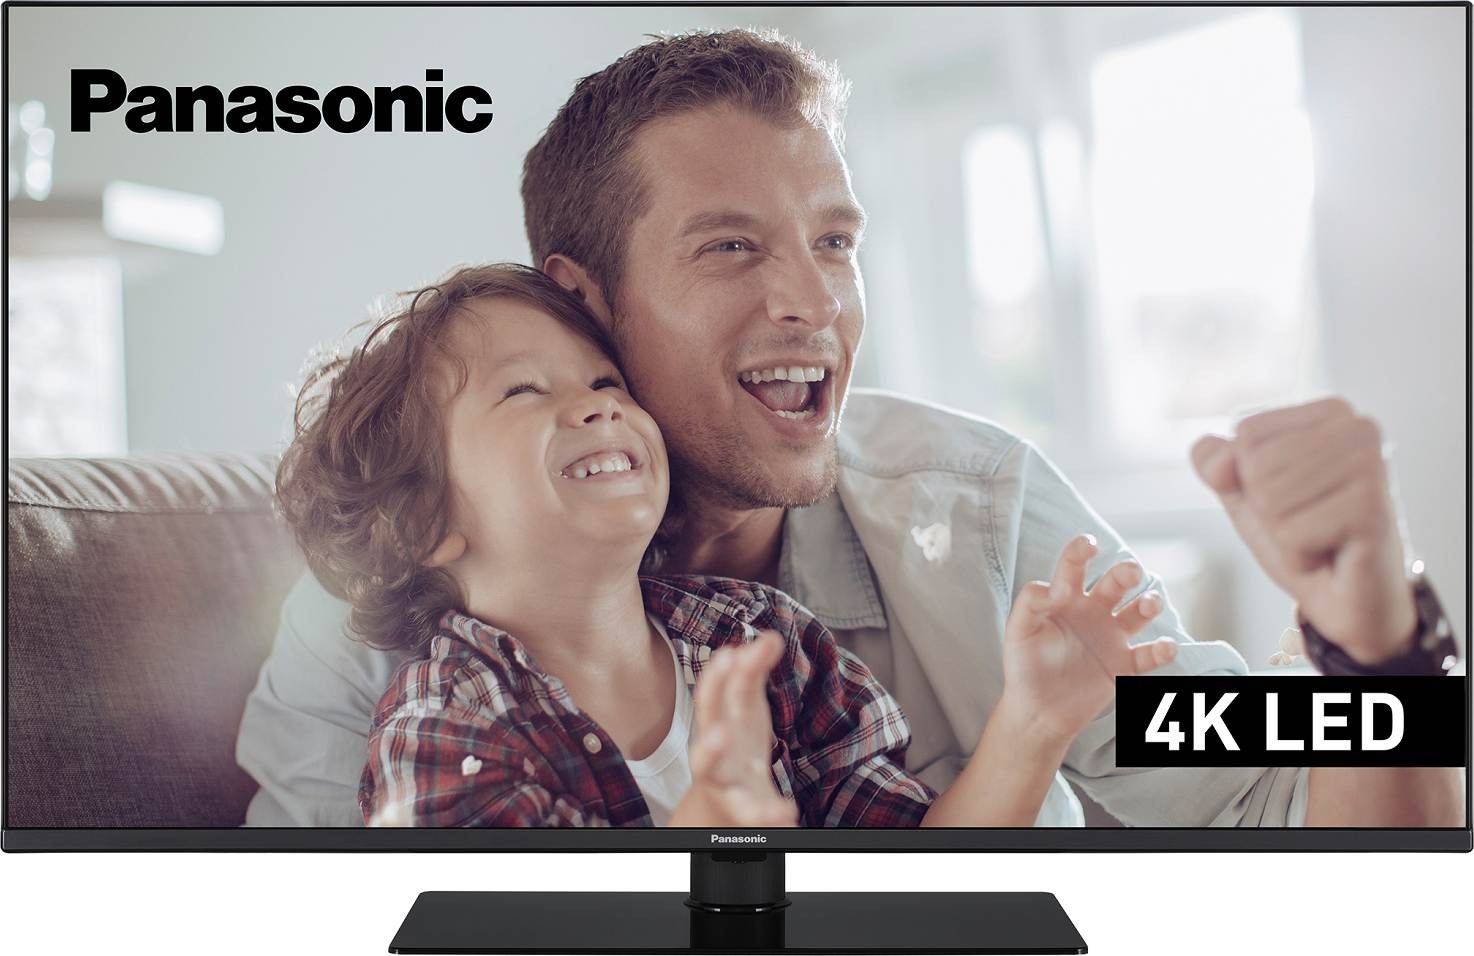 PANASONIC TV LED 4K 139 cm 55" - TX-55LX650E